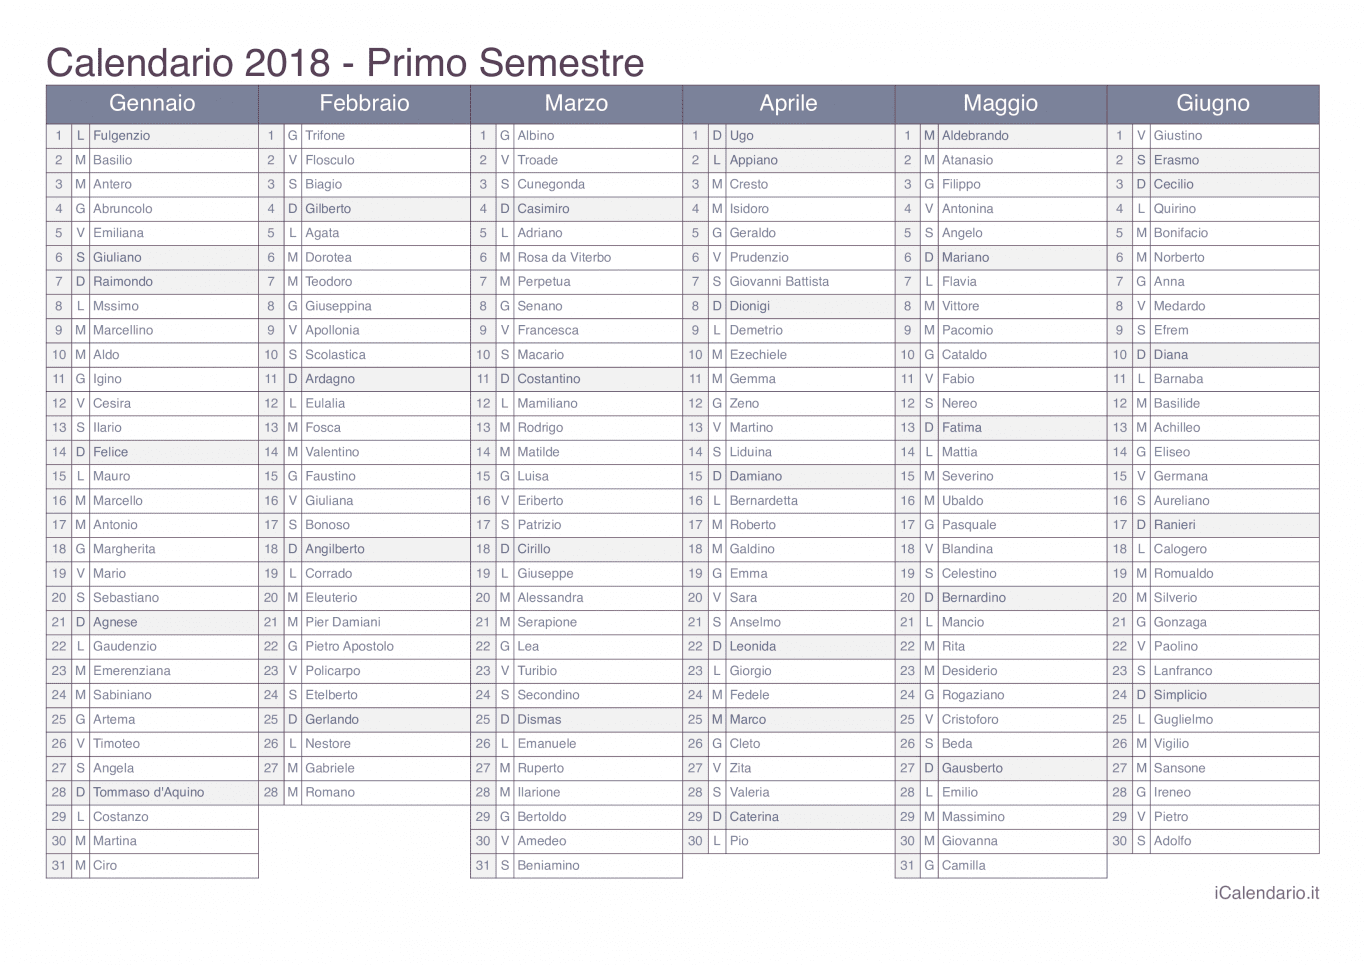 Calendario semestrale 2018 con santi e festivi - Office